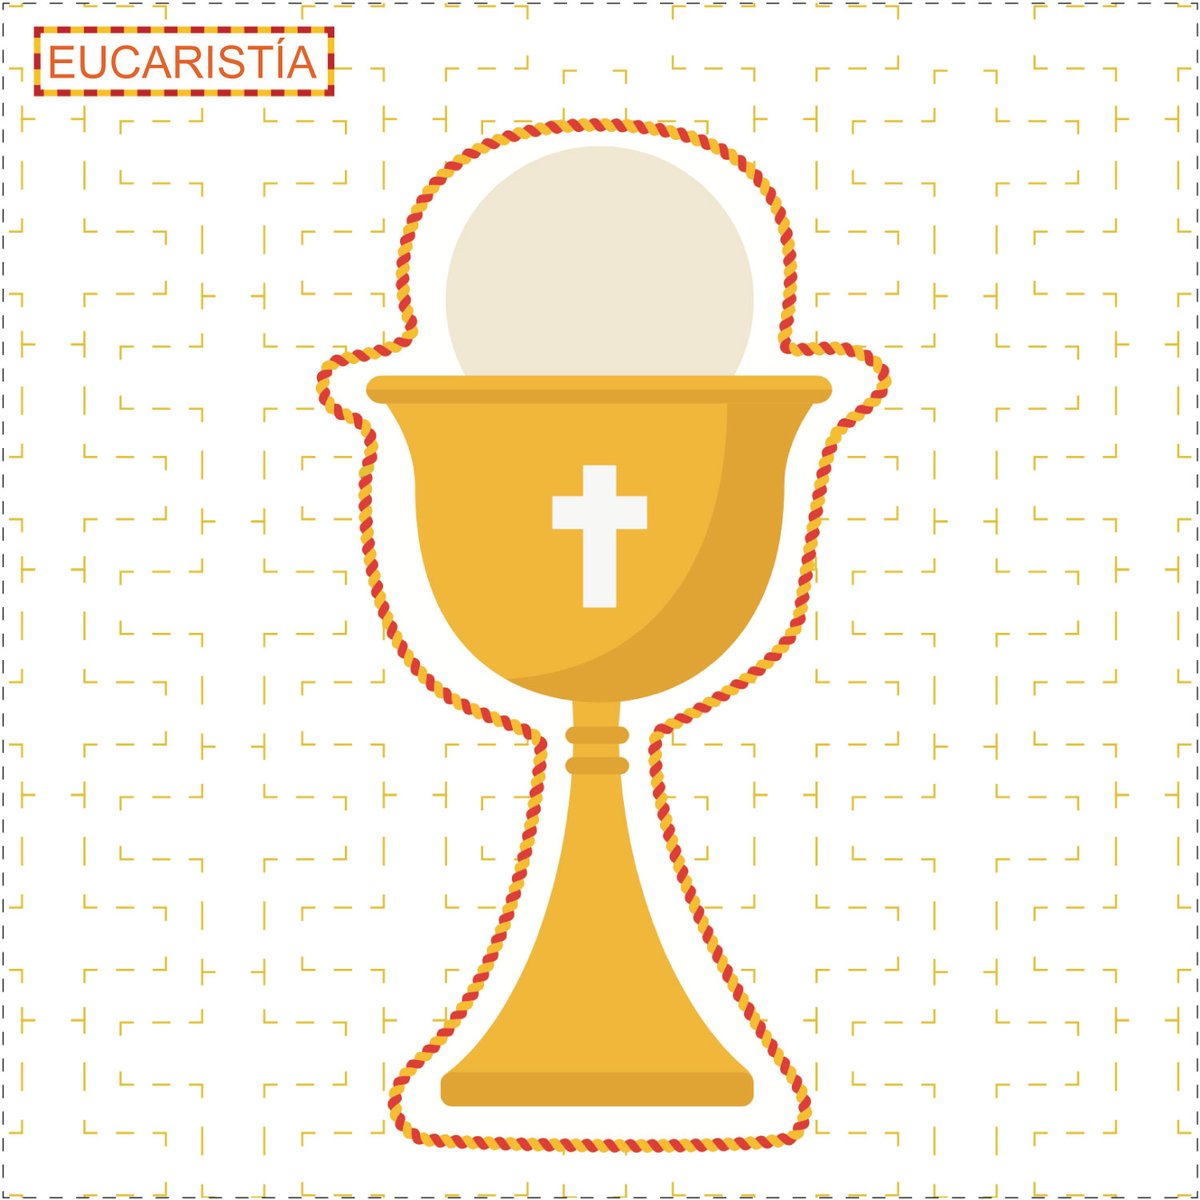 Sadlier-Colcha-de-sacramentos-Eucaristia-3